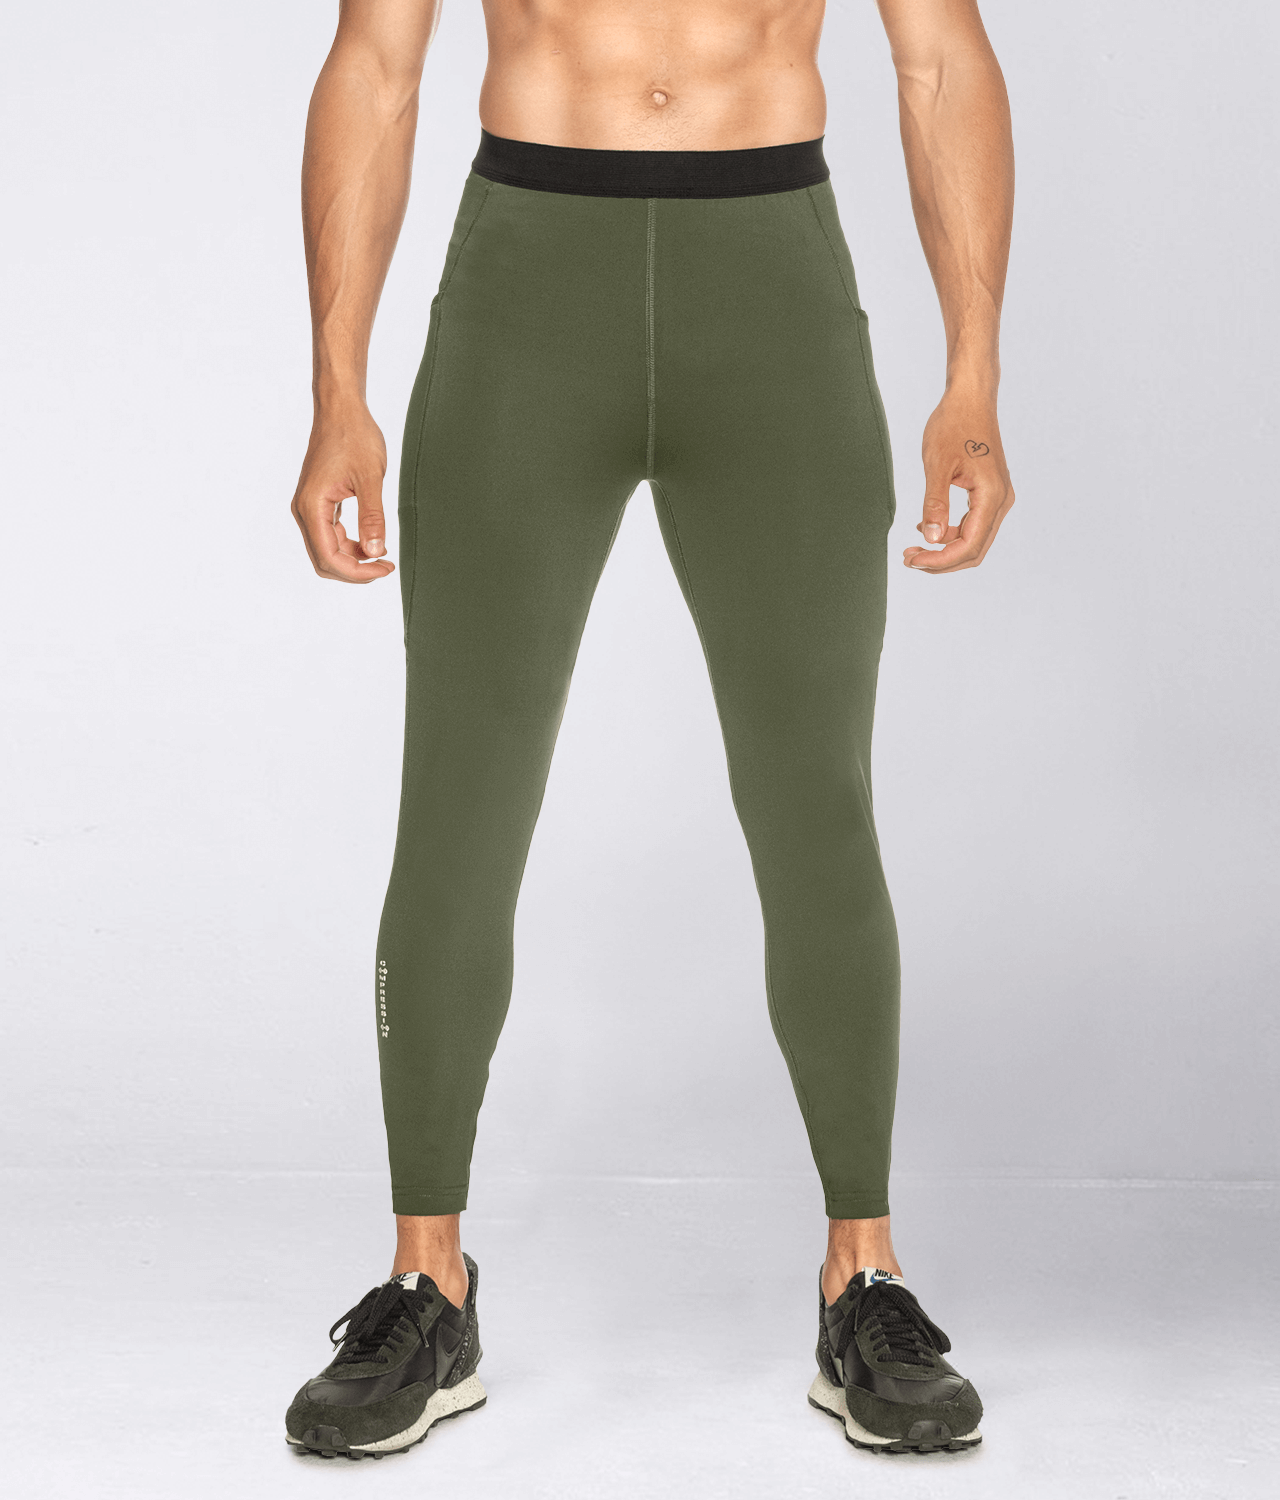 Men's Workout Clothes - Workout Clothes for Men - Born Tough